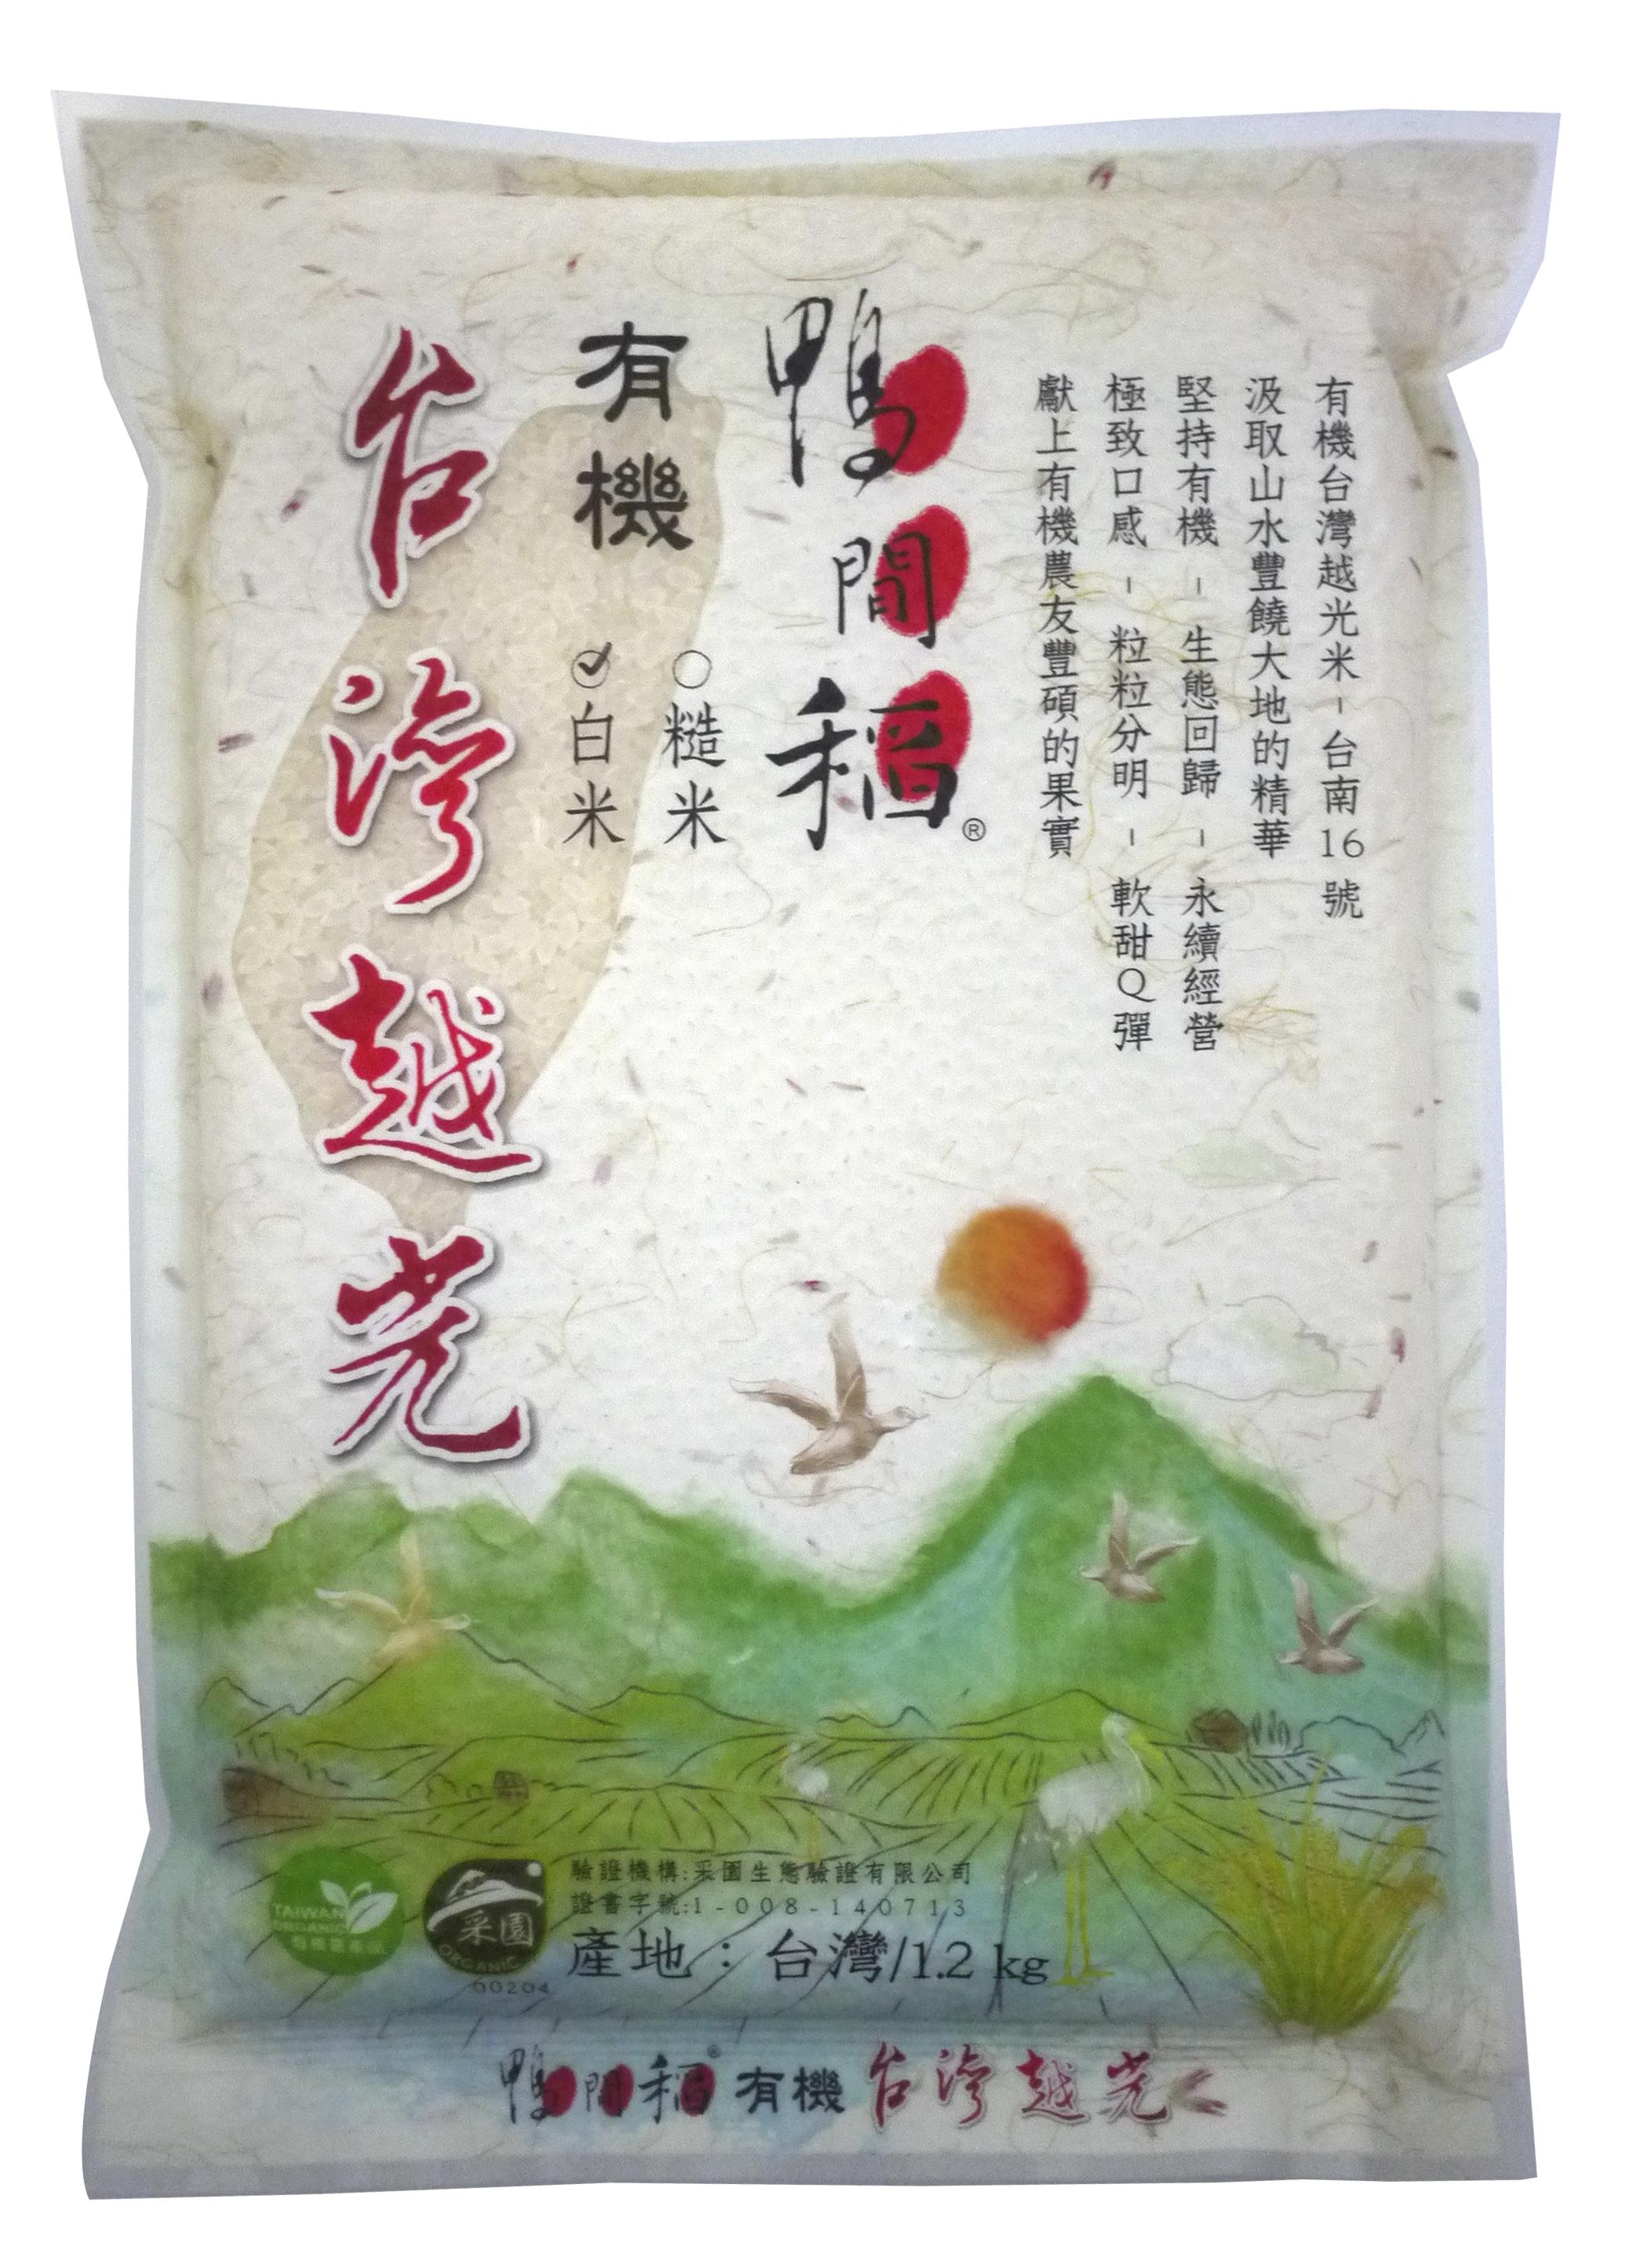 鴨間稻有機台灣越光白米1.2kg